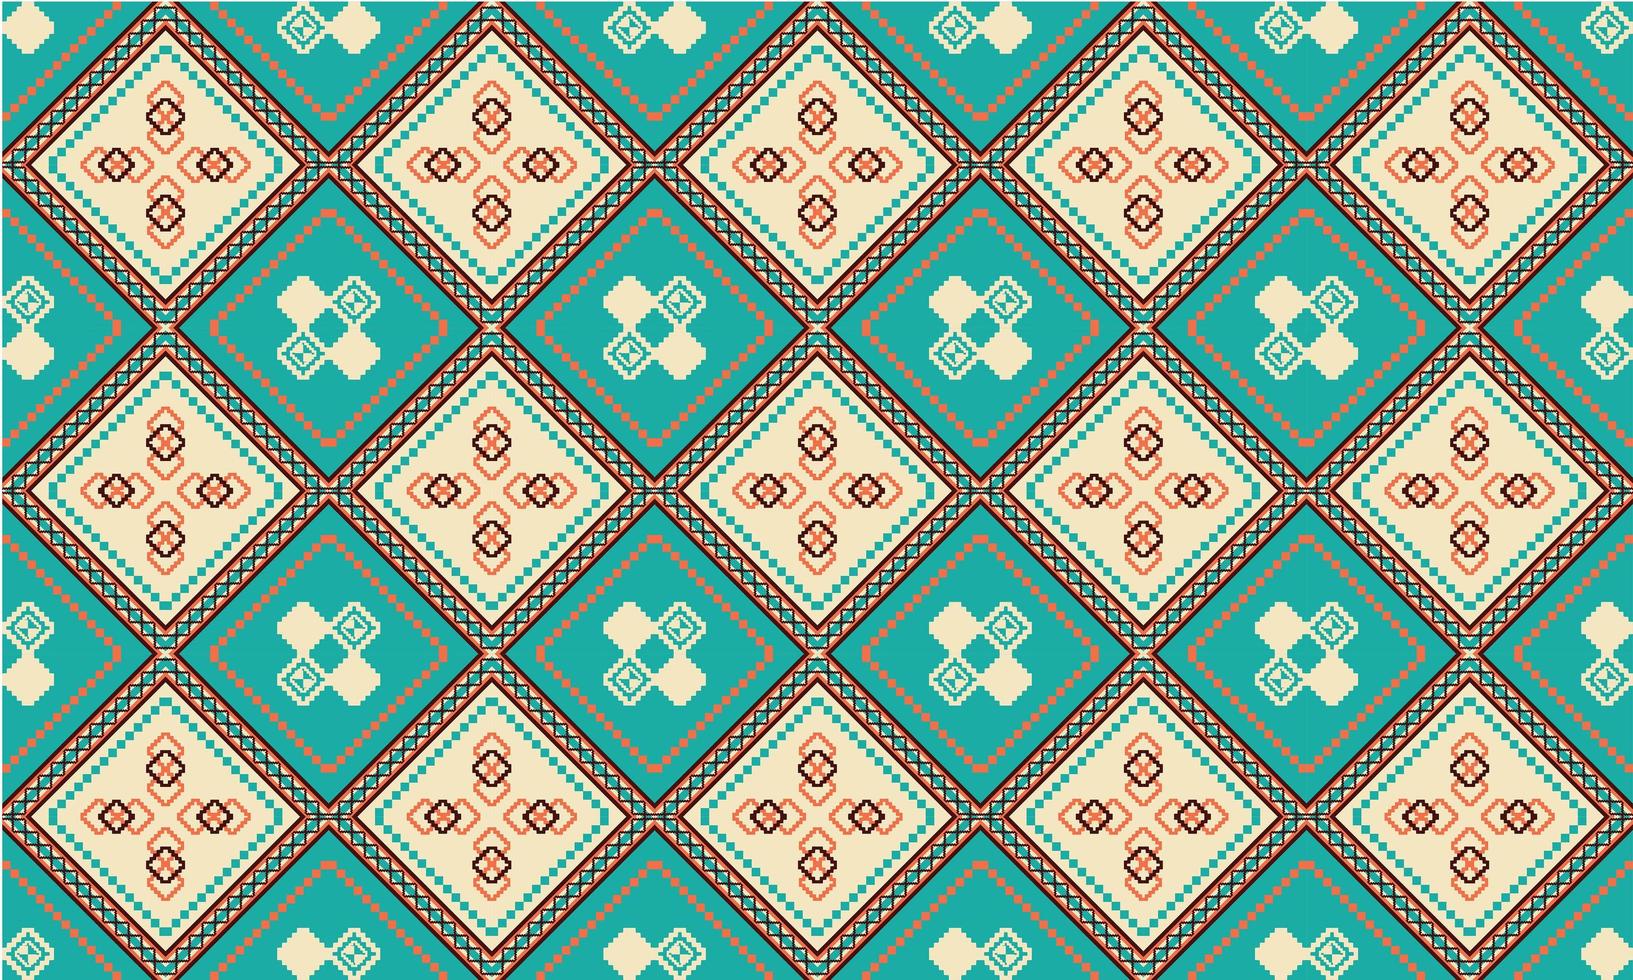 geometriska etniska orientaliska sömlösa mönster traditionell design för bakgrund, matta, tapeter, kläder, inslagning, batik, tyg, vektor illustration.broderi stil.